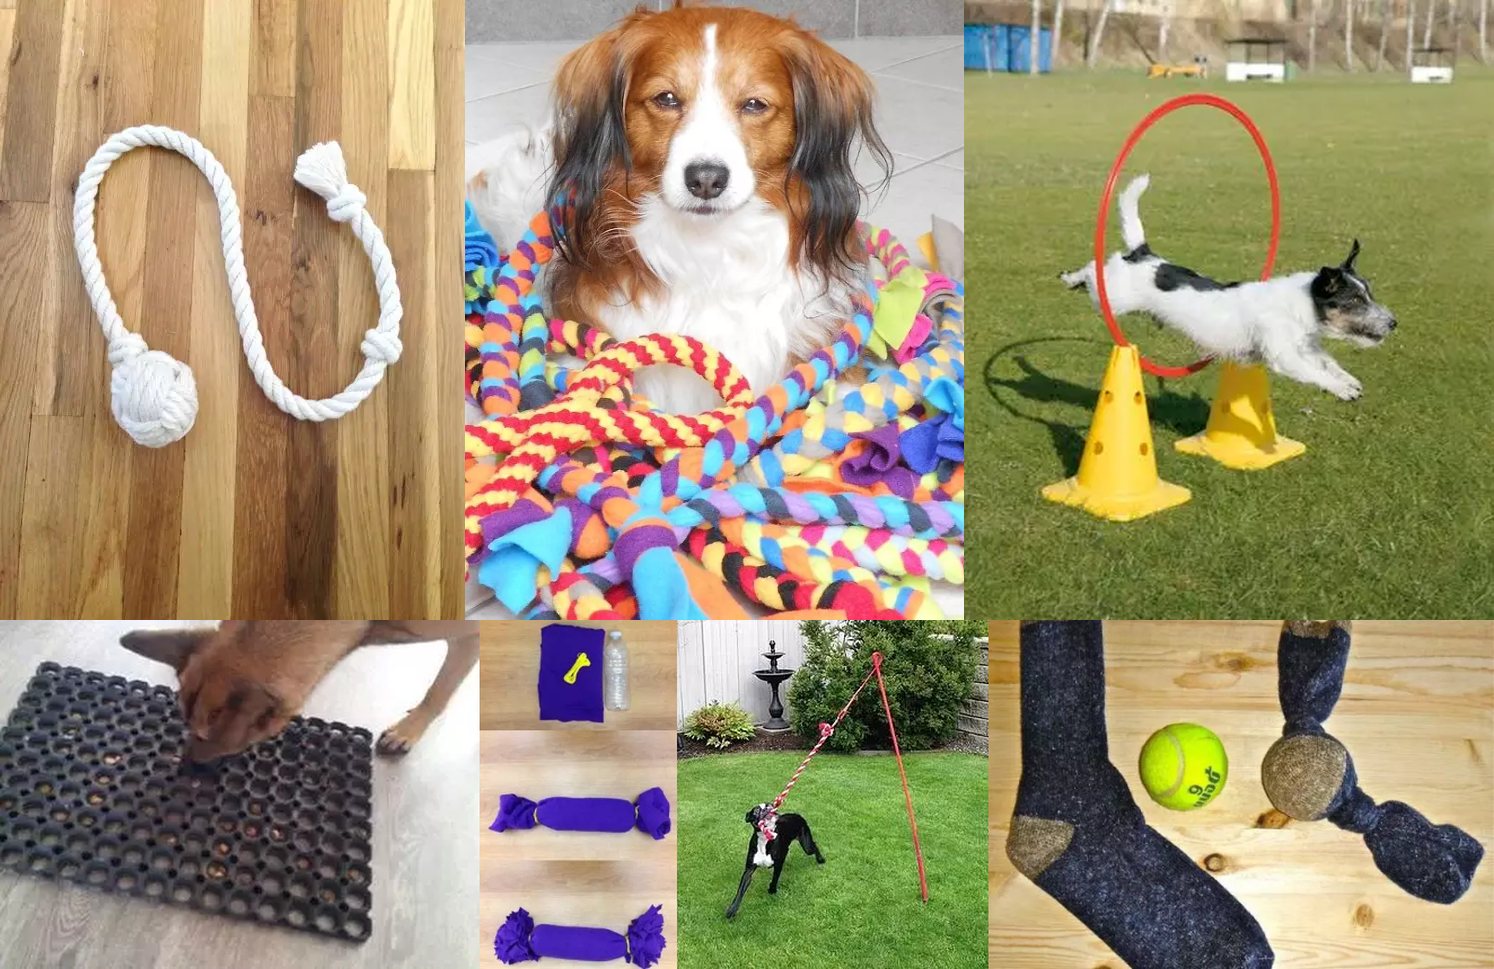 Mascotas: Cómo hacer juguetes caseros para mi perro en sencillos pasos  trucos caseros